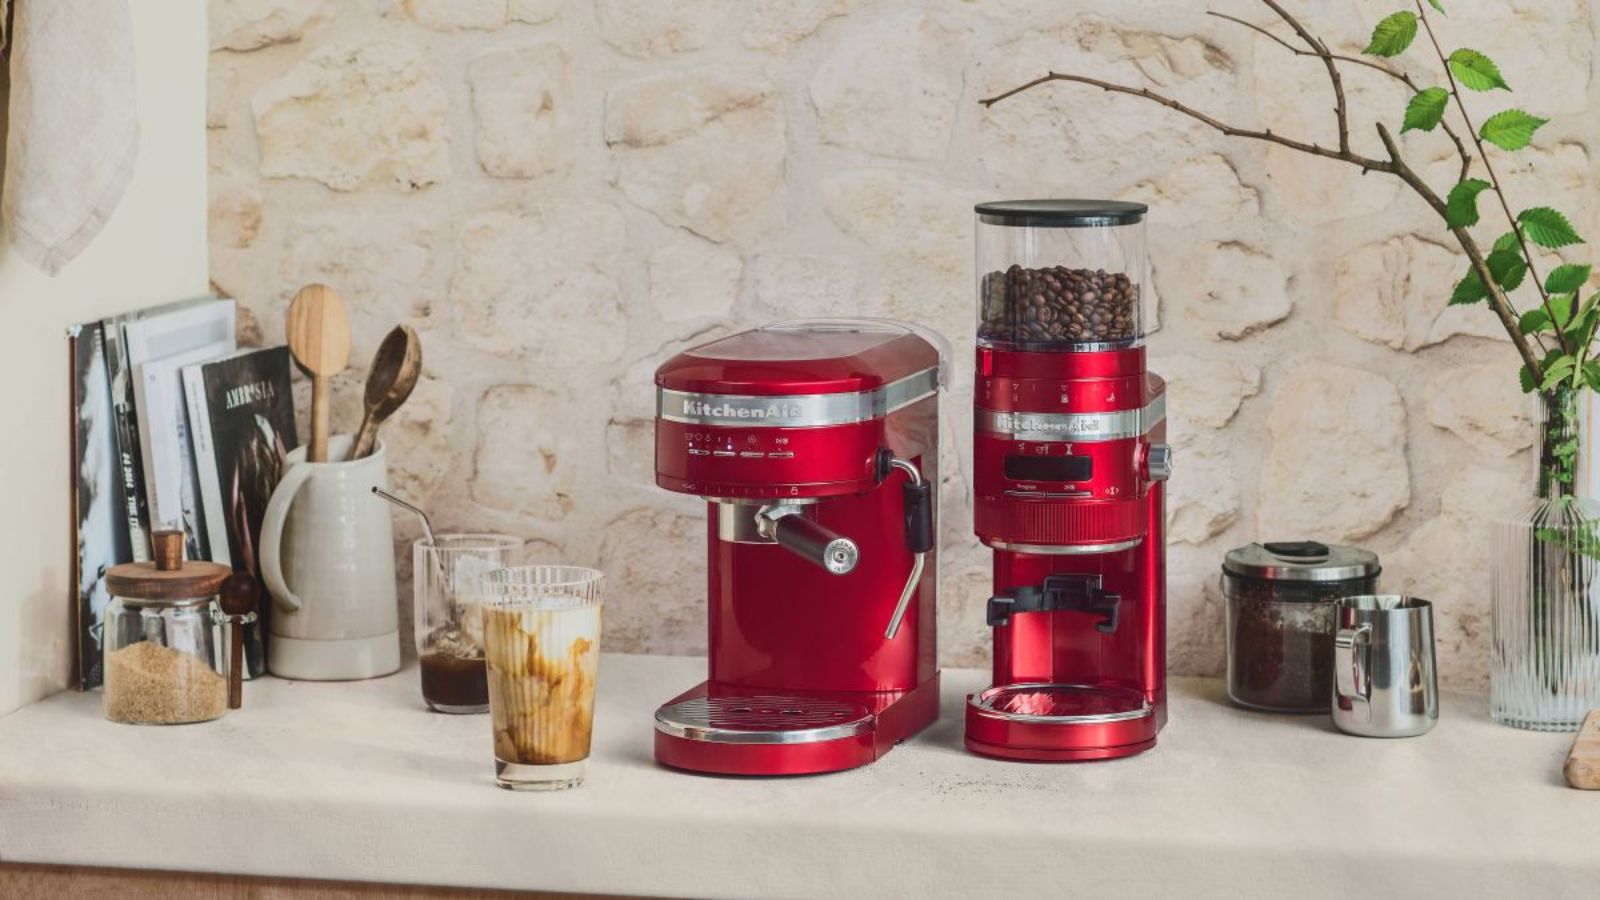 KitchenAid Espresso Machine review: the next best coffee maker